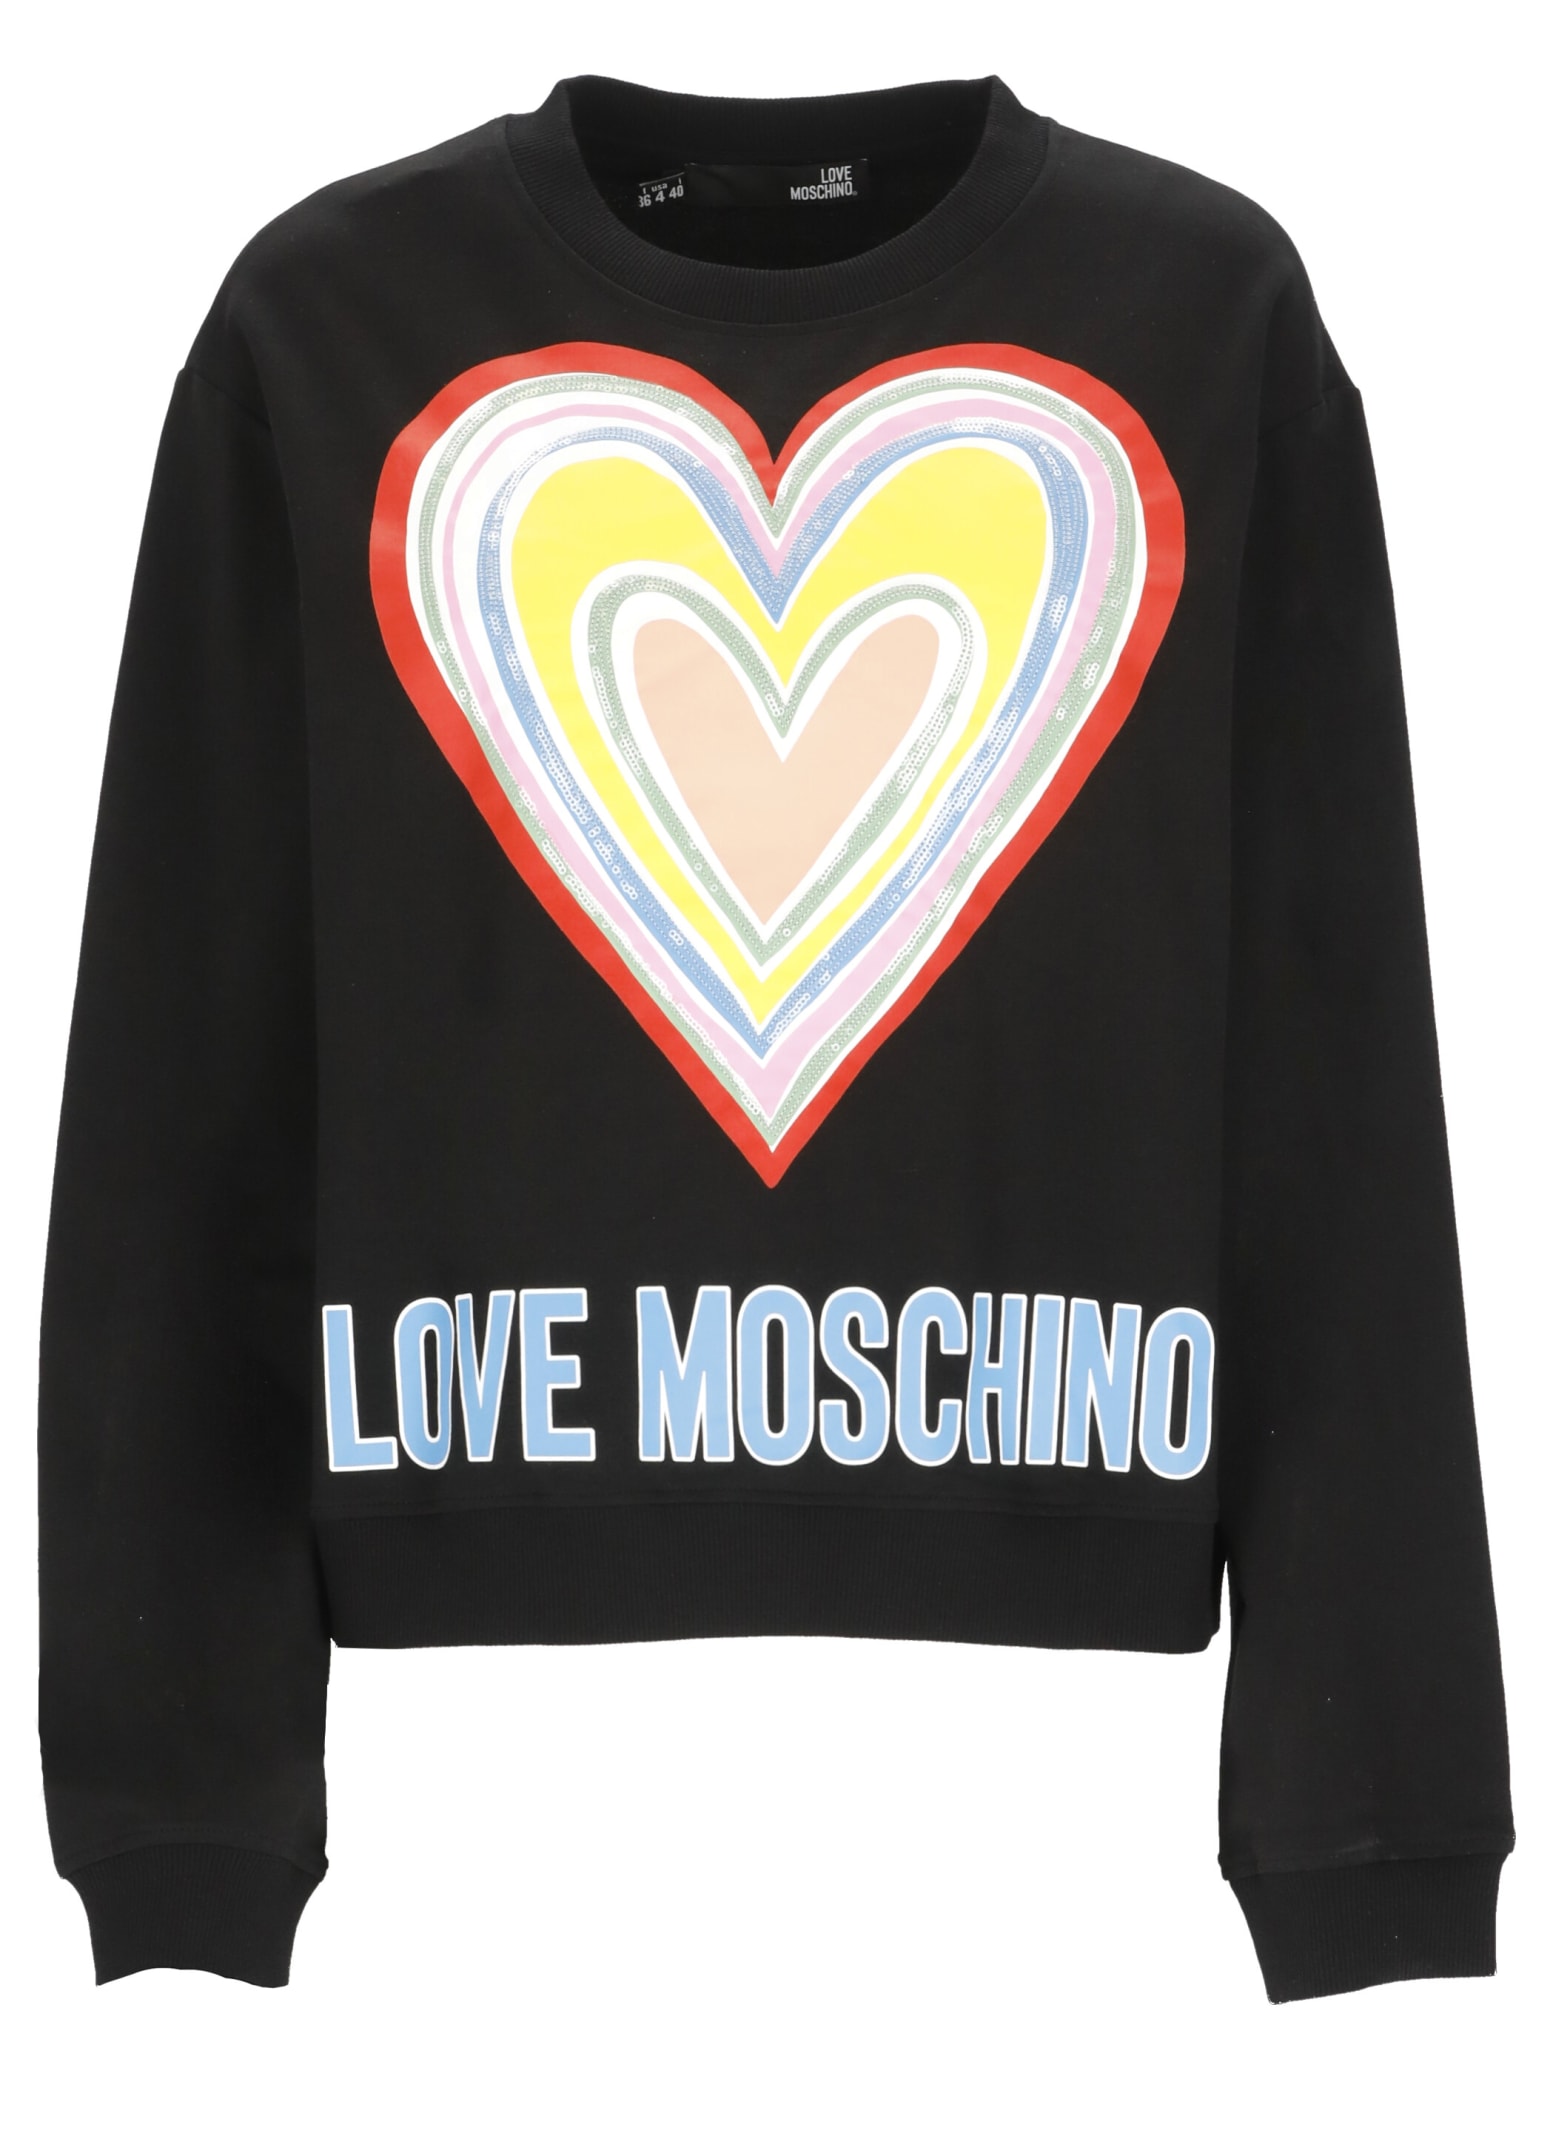 Love Moschino Sweatshirt With Heart Print